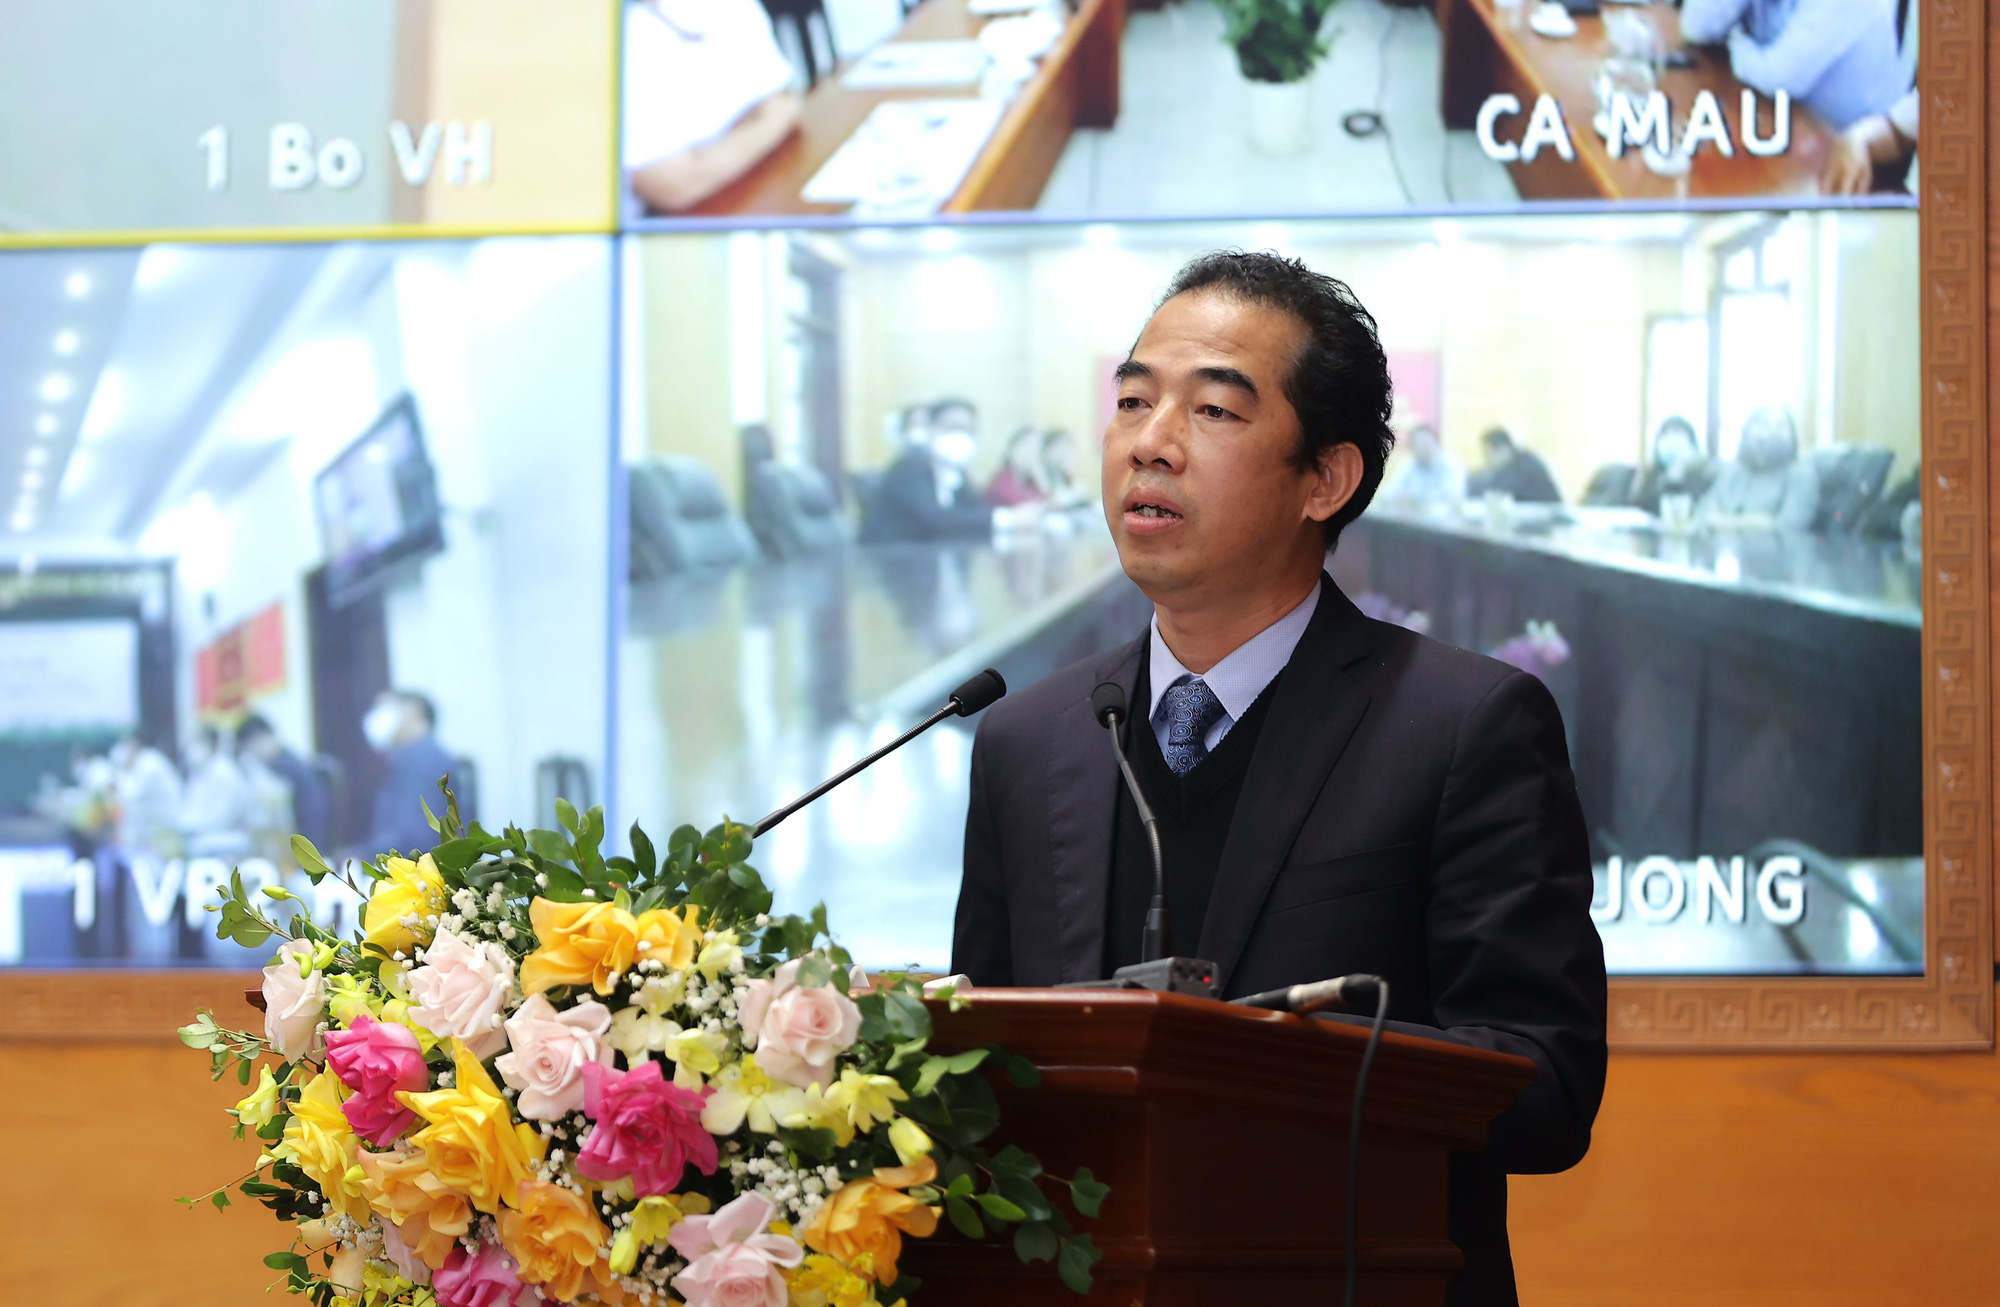 Phó Thủ tướng: “Phải tiếp tục phát huy được truyền thống văn hóa tốt đẹp của con người Việt Nam như lúc khó khăn, dịch bệnh” - Ảnh 4.